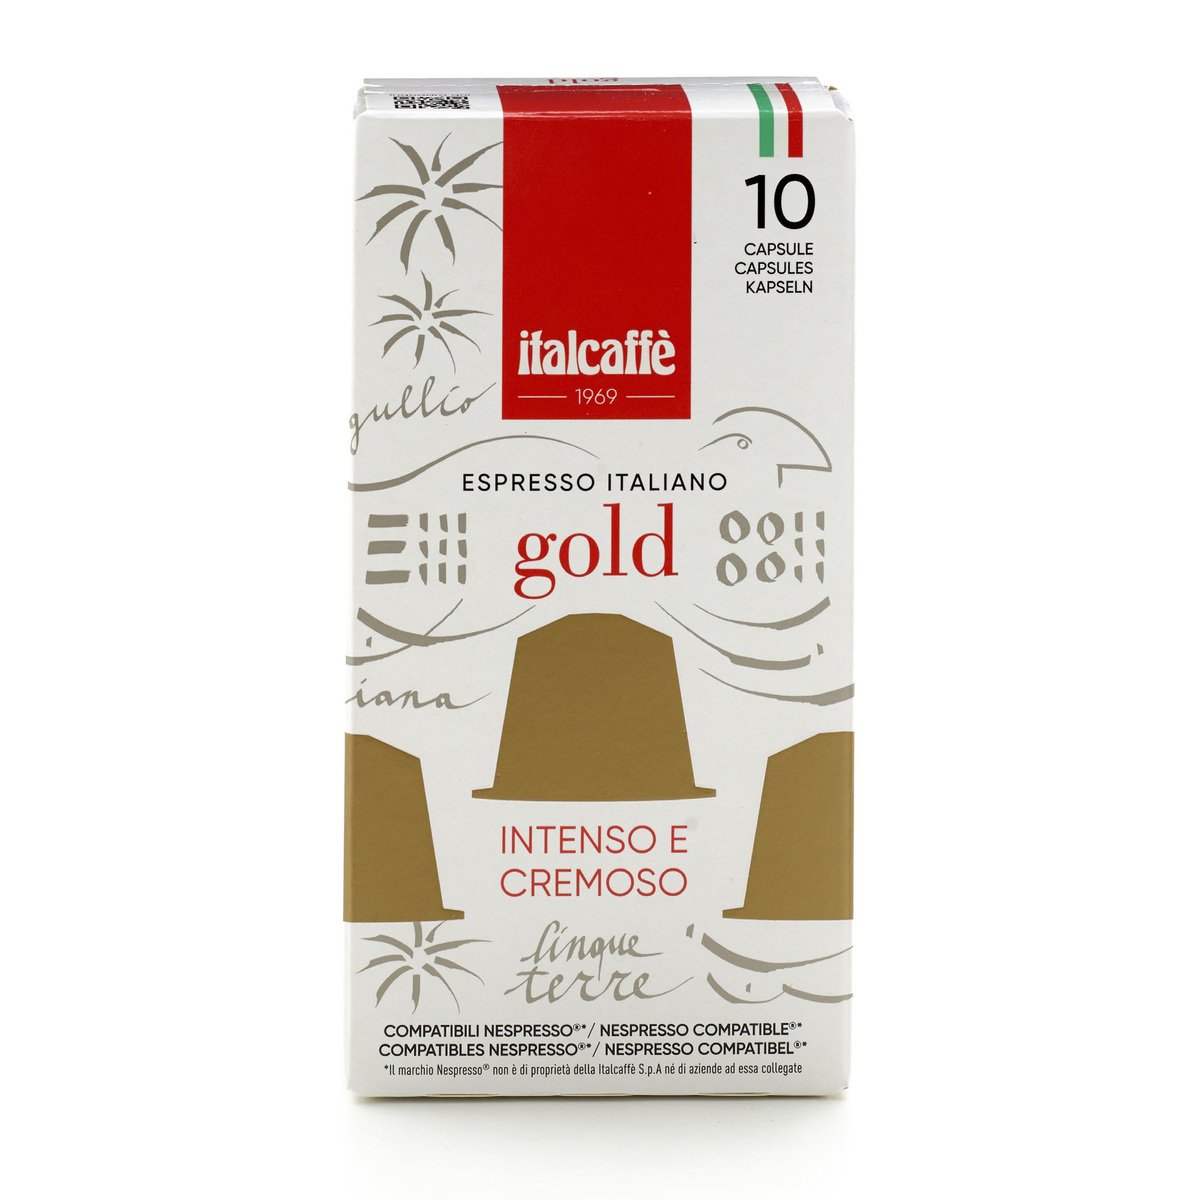 Italcaffe Espresso Italiano Gold Capsule 10 pcs